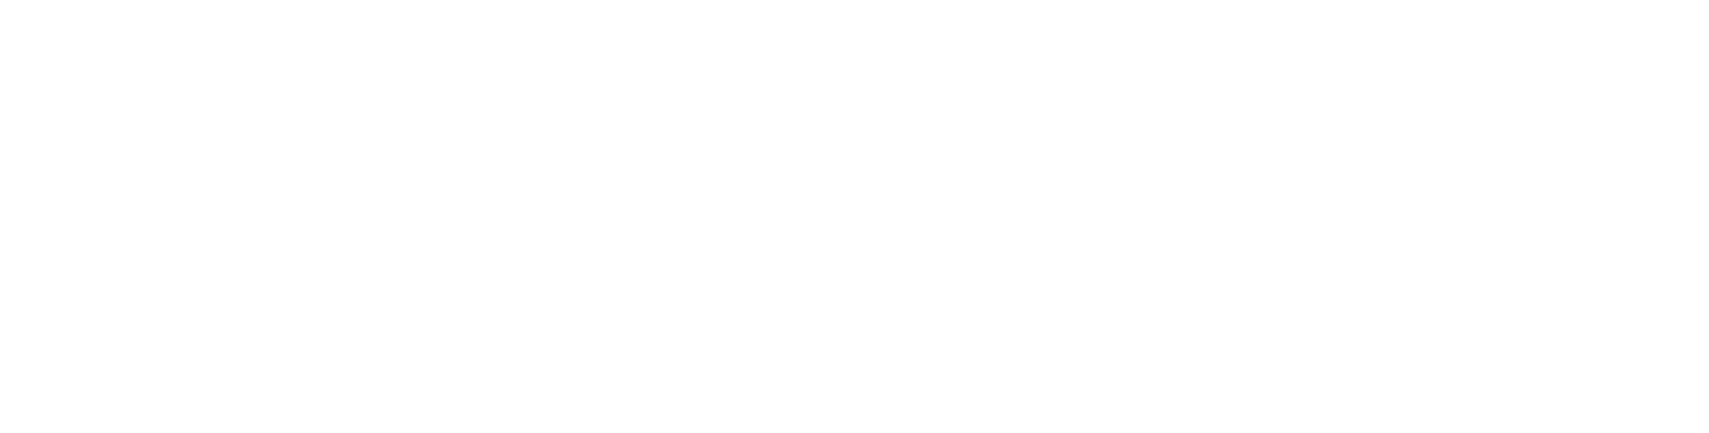 University of Alabama logo - white